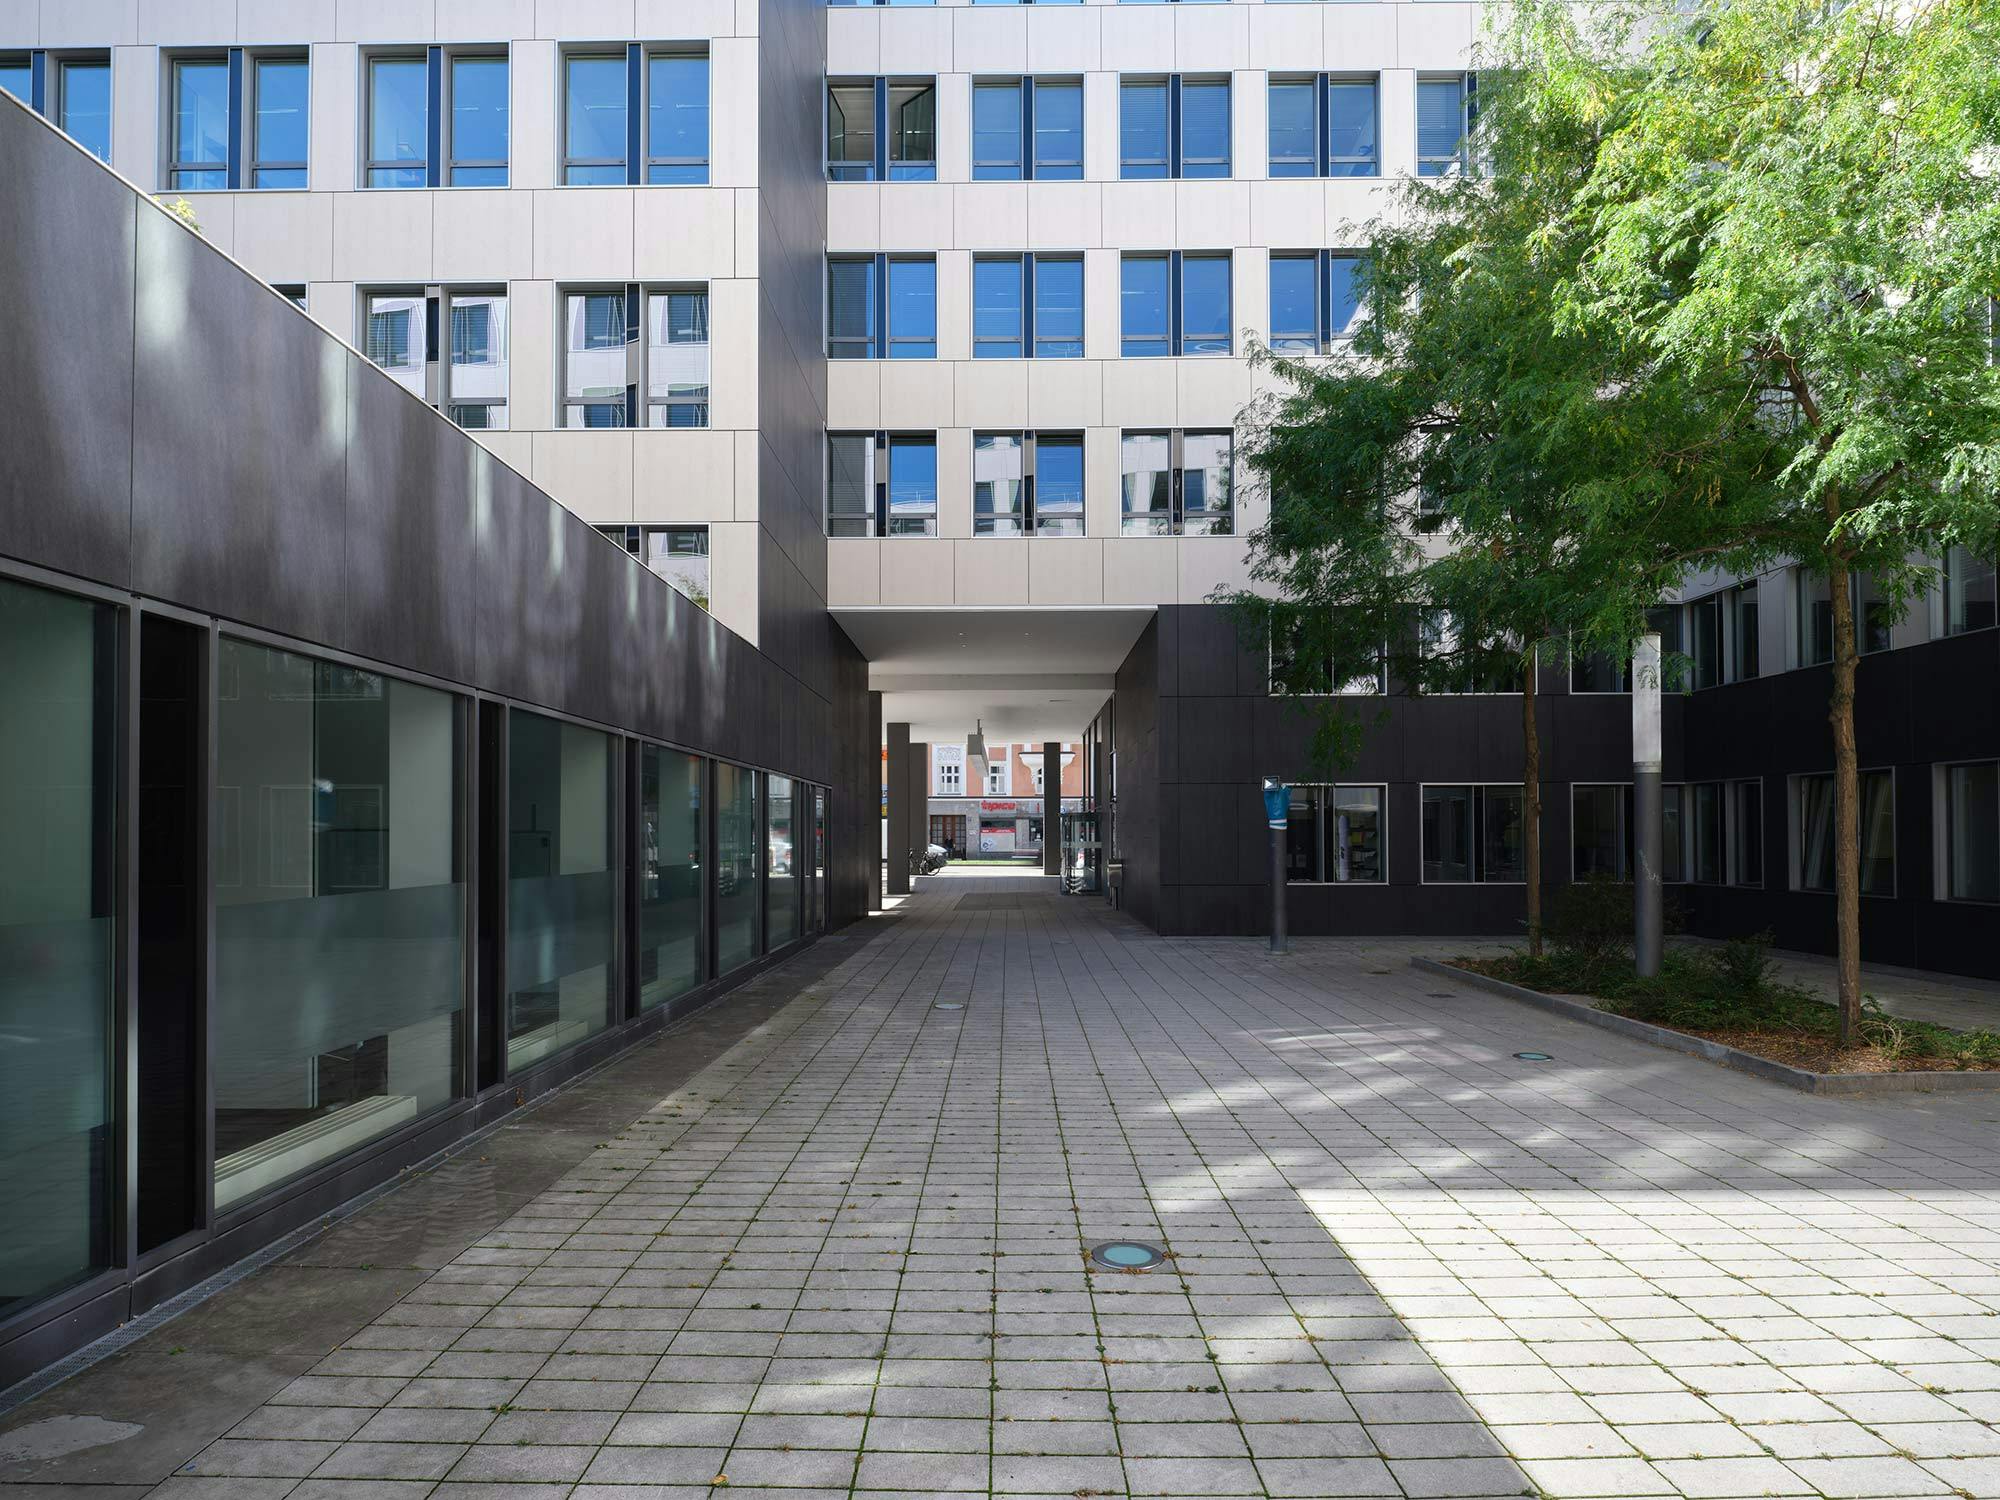 Image 48 of Fachada office building Munich.jpg?auto=format%2Ccompress&ixlib=php 3.3 in Gunni Trentino - Cosentino